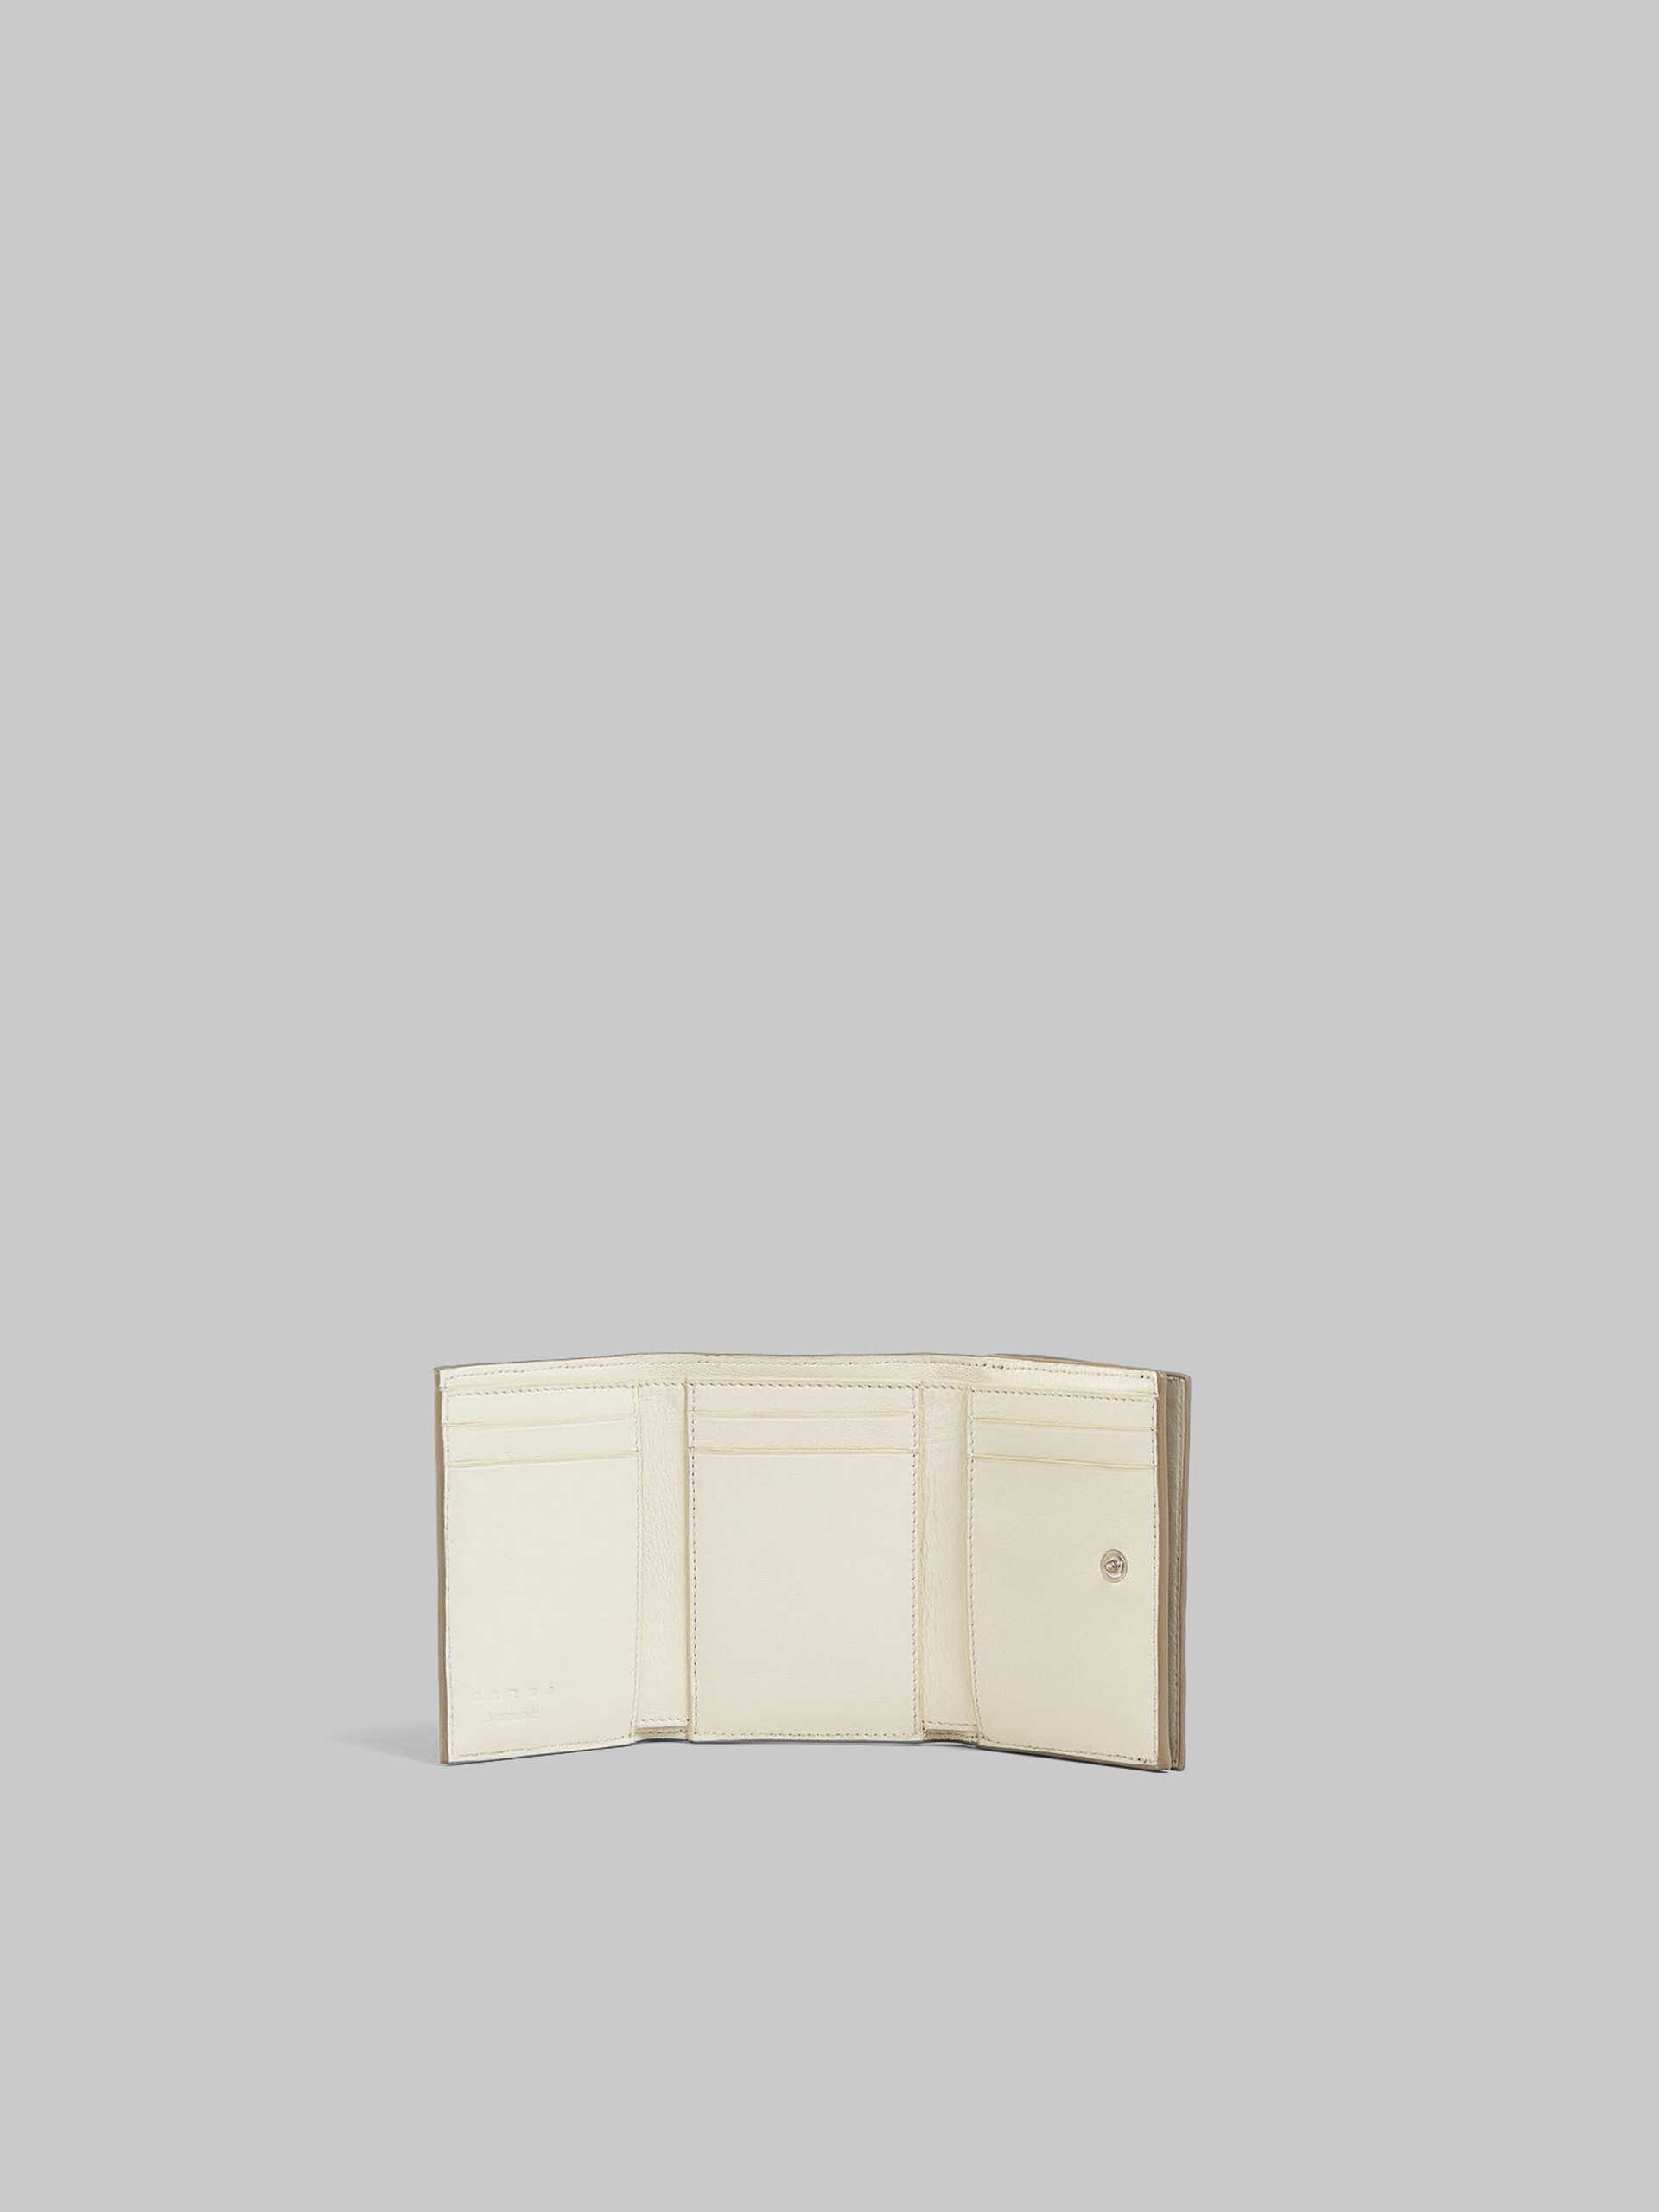 ブラック レザー製 三つ折りウォレット、レイズド マルニロゴ - 財布 - Image 2